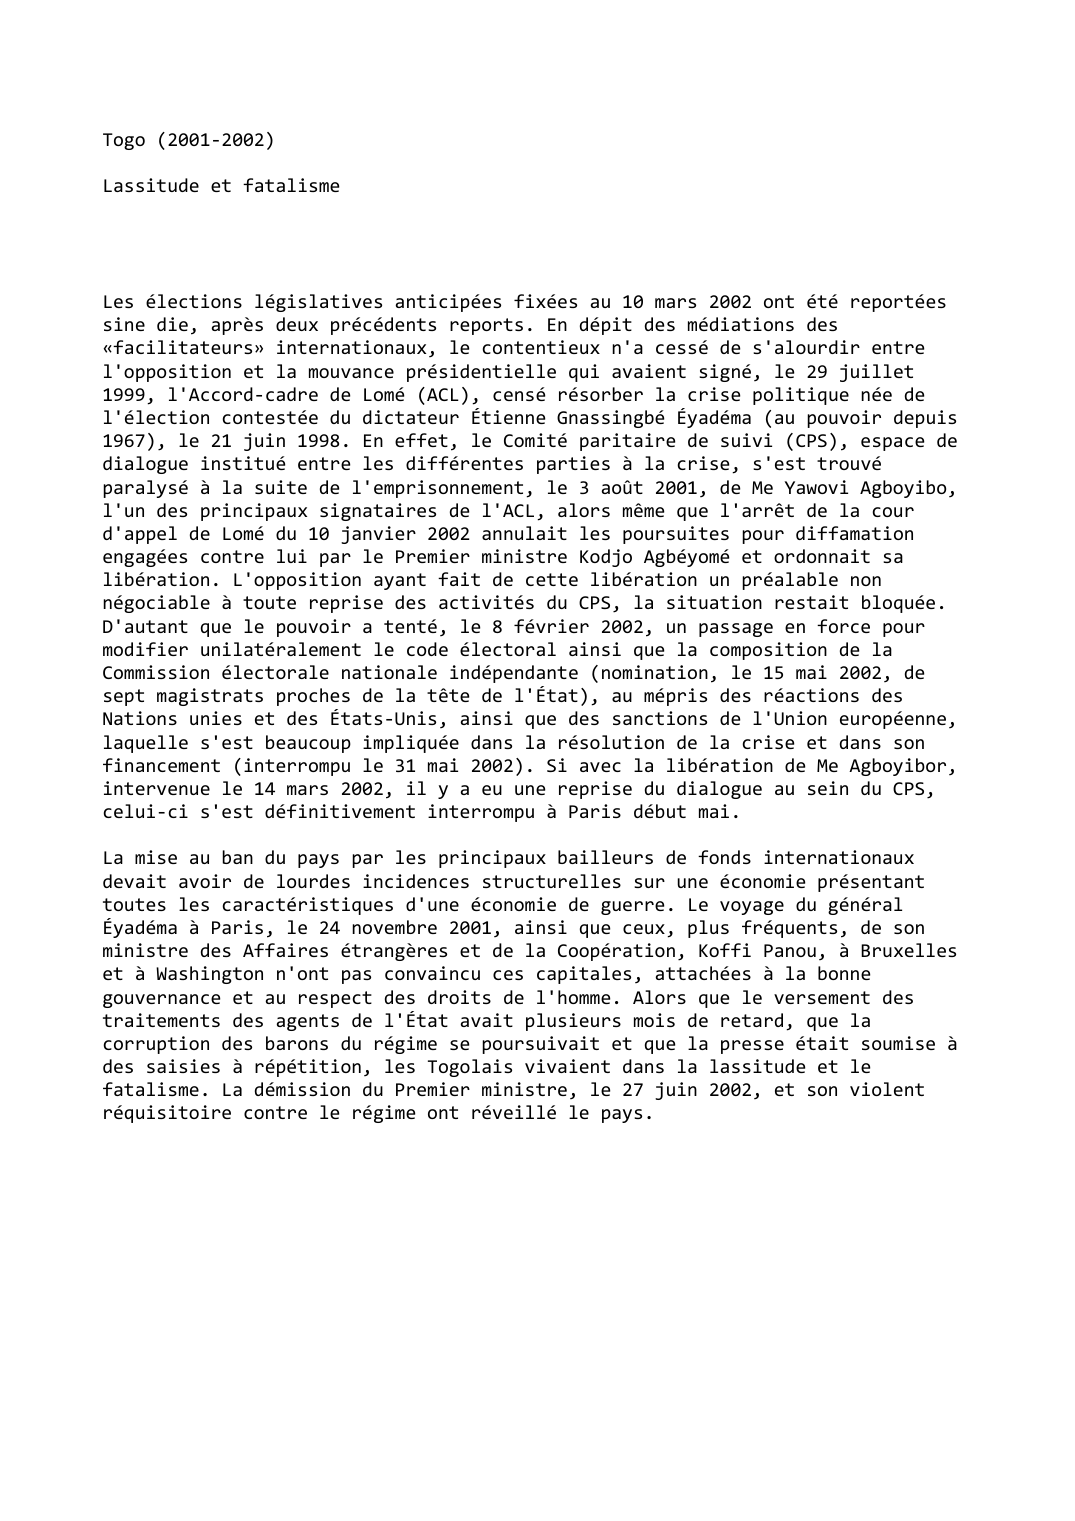 Prévisualisation du document Togo (2001-2002)

Lassitude et fatalisme